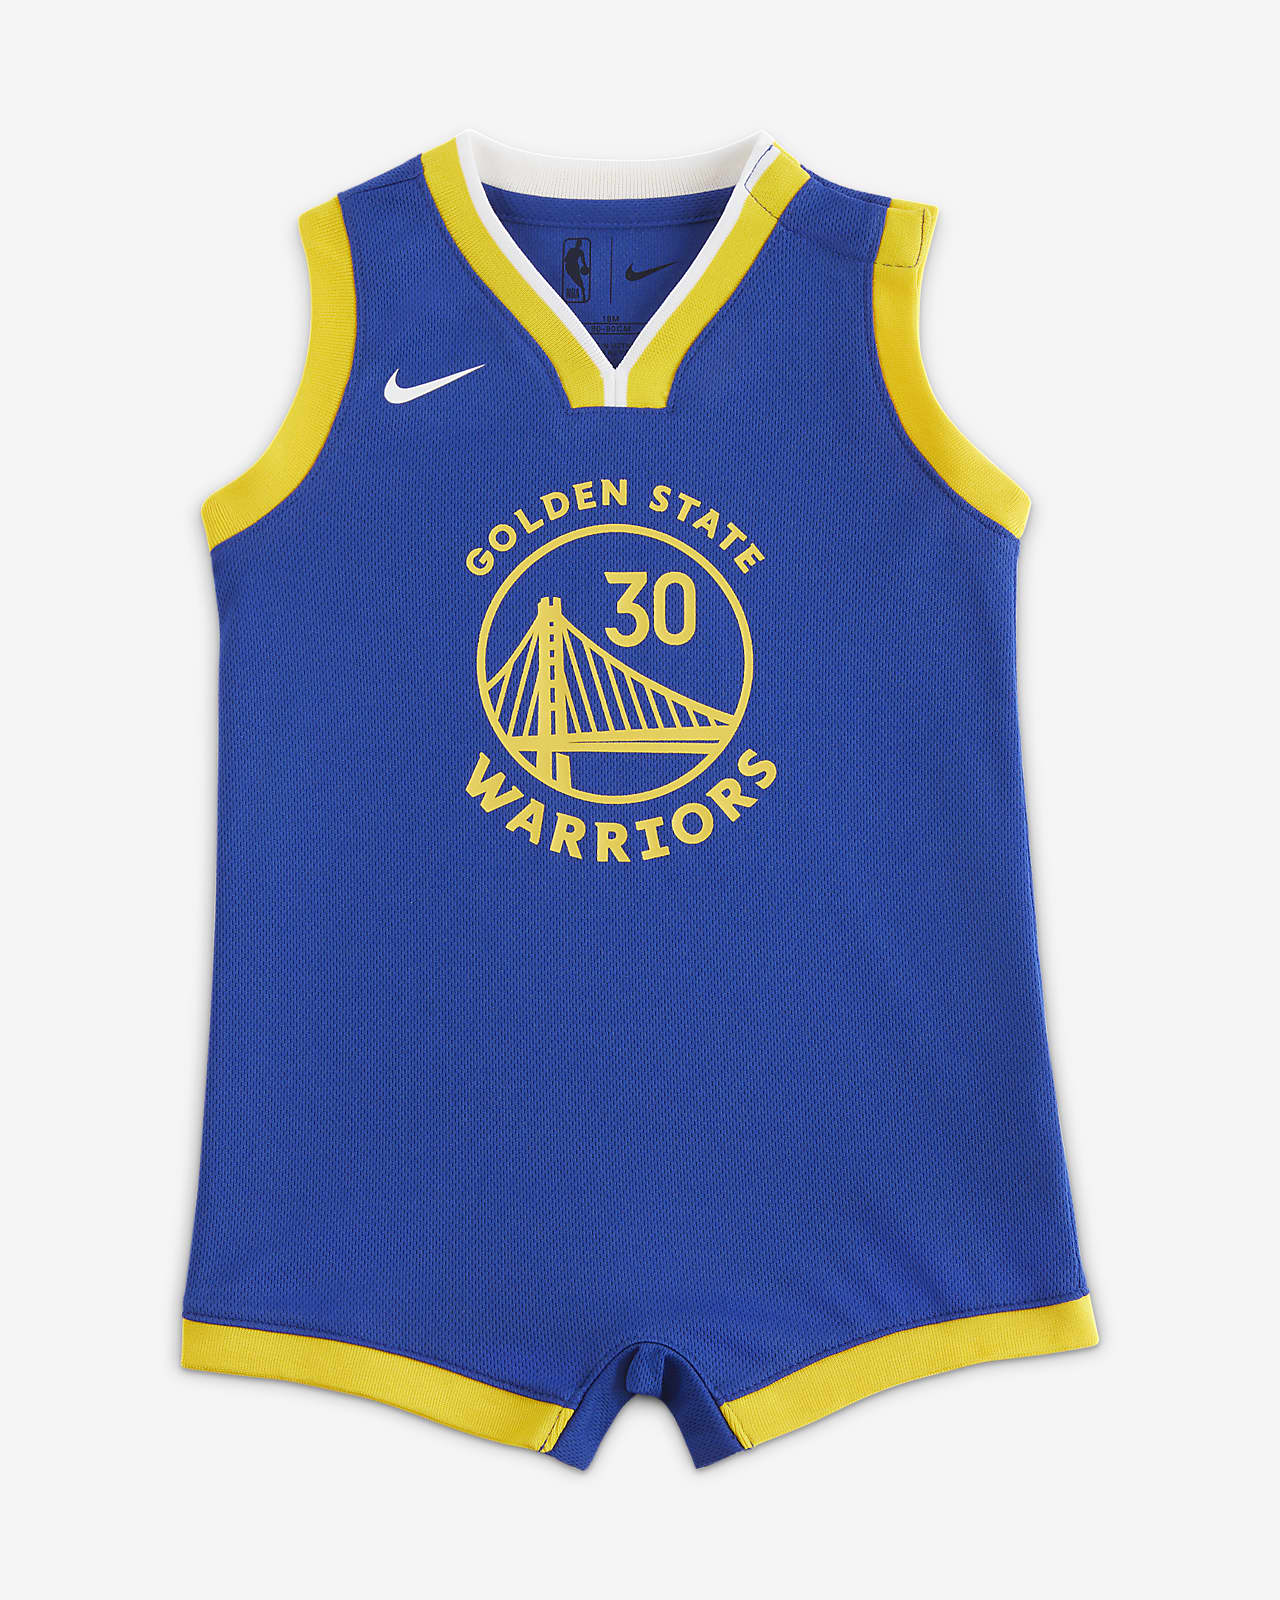 金州勇士队 (Stephen Curry) Nike NBA 婴童连体衣